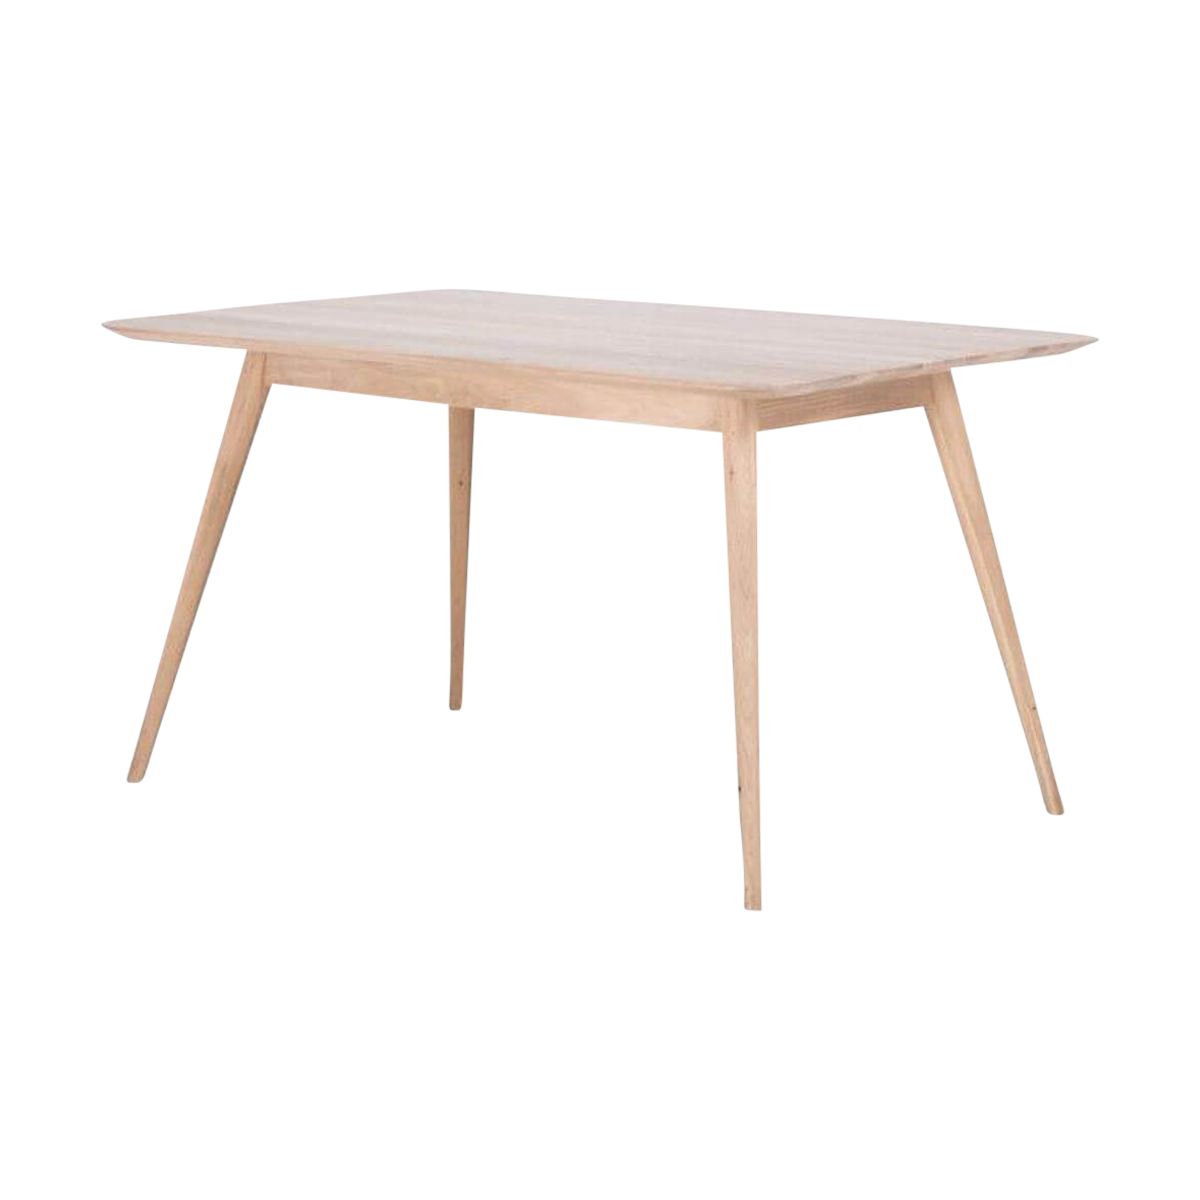 Stafa table houten eettafel whitewash - 140 x 90 cm